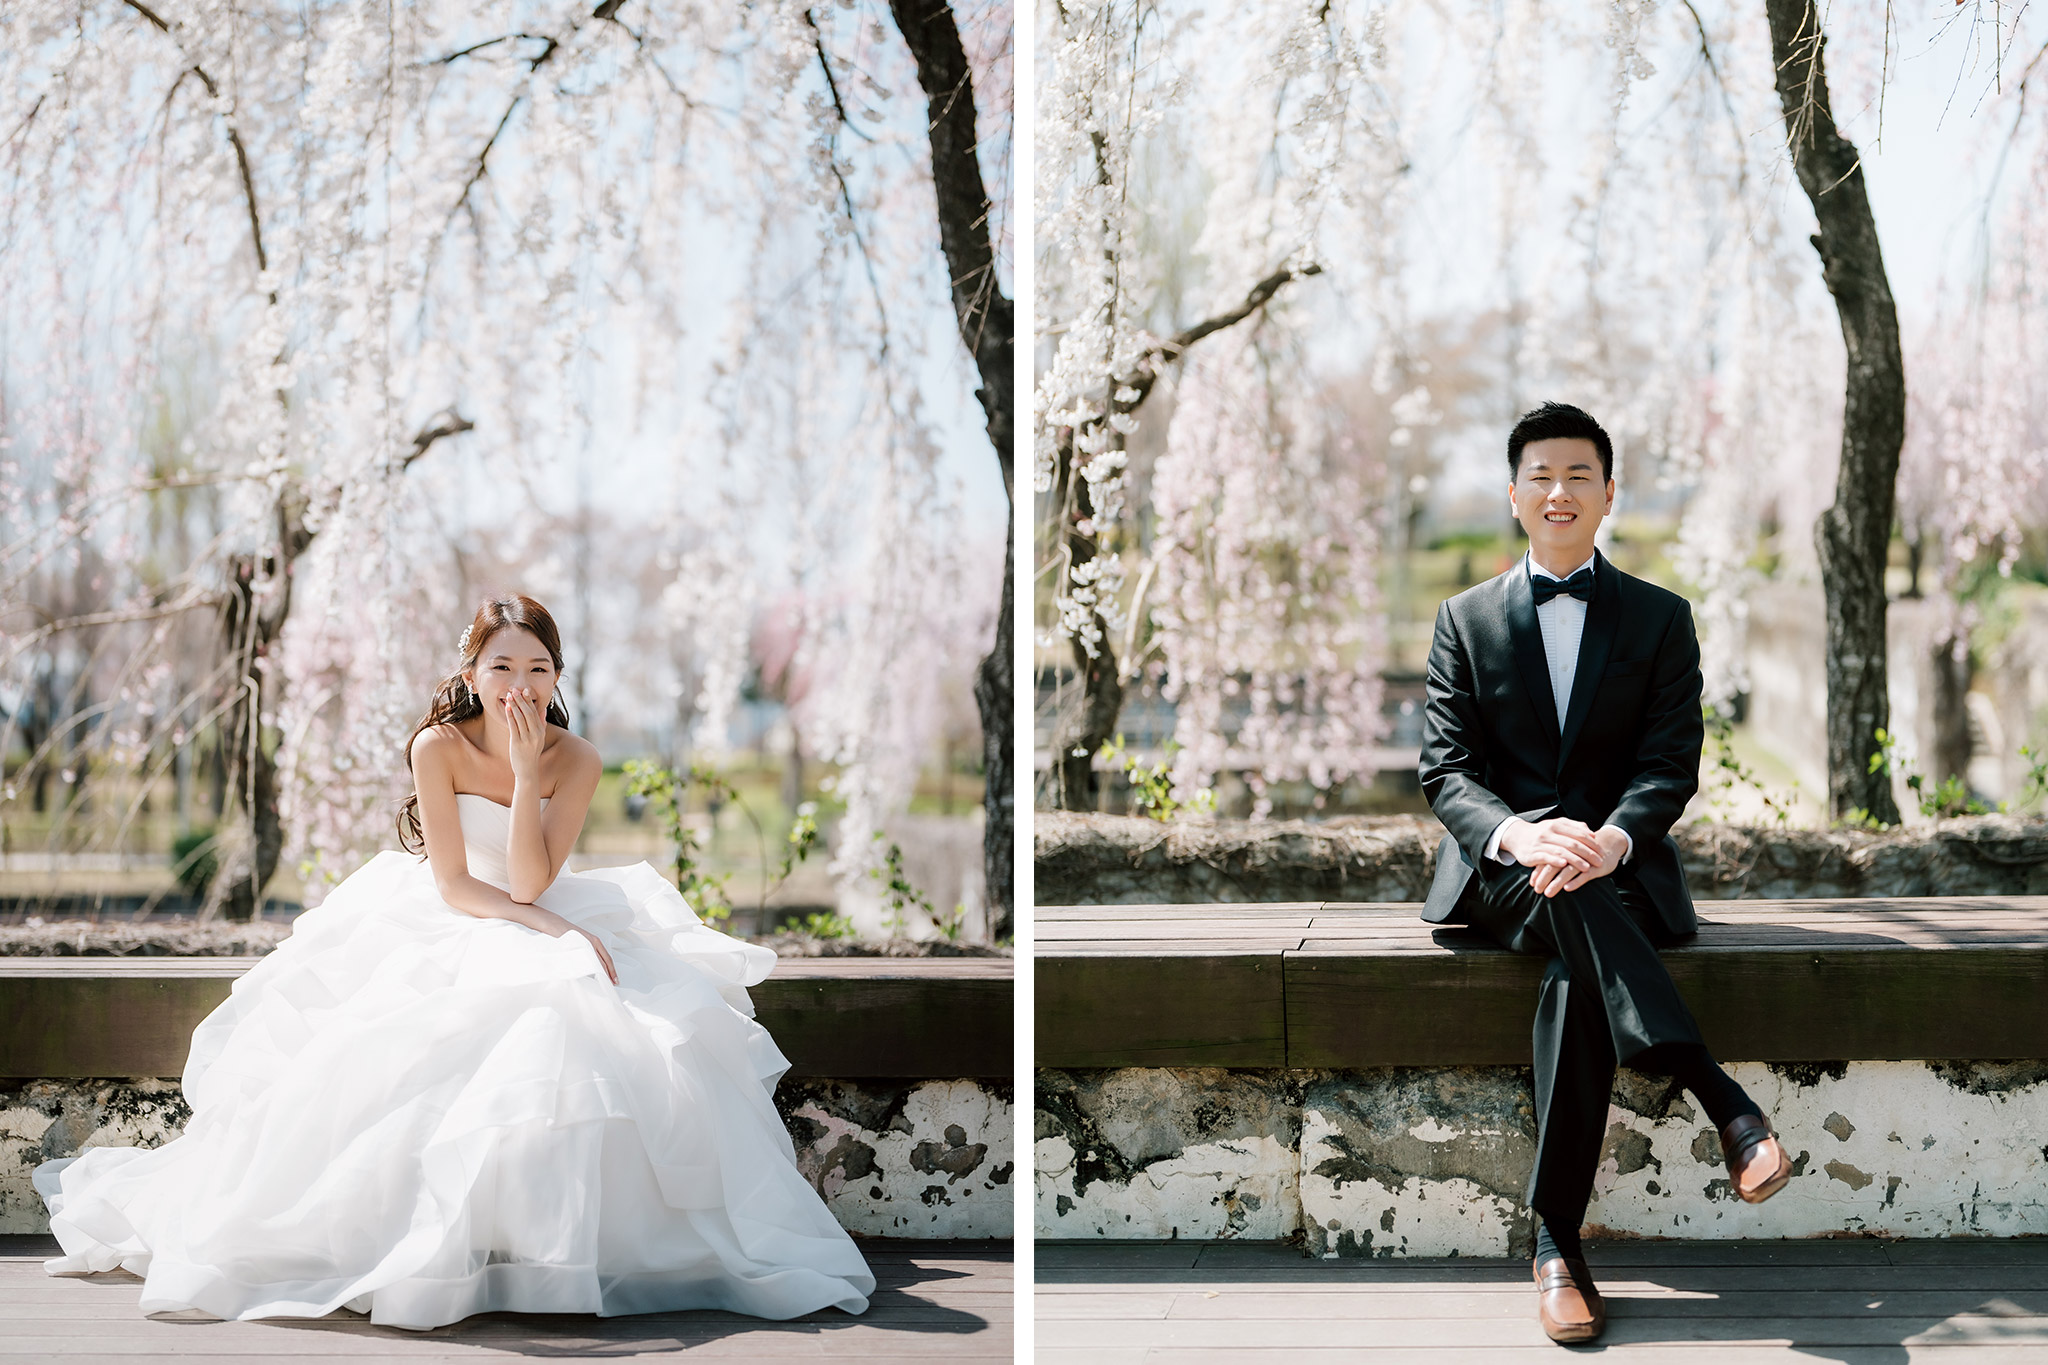 韓國首爾櫻花季婚紗拍攝 仙遊島公園和南山谷韓屋村 by Jungyeol on OneThreeOneFour 5